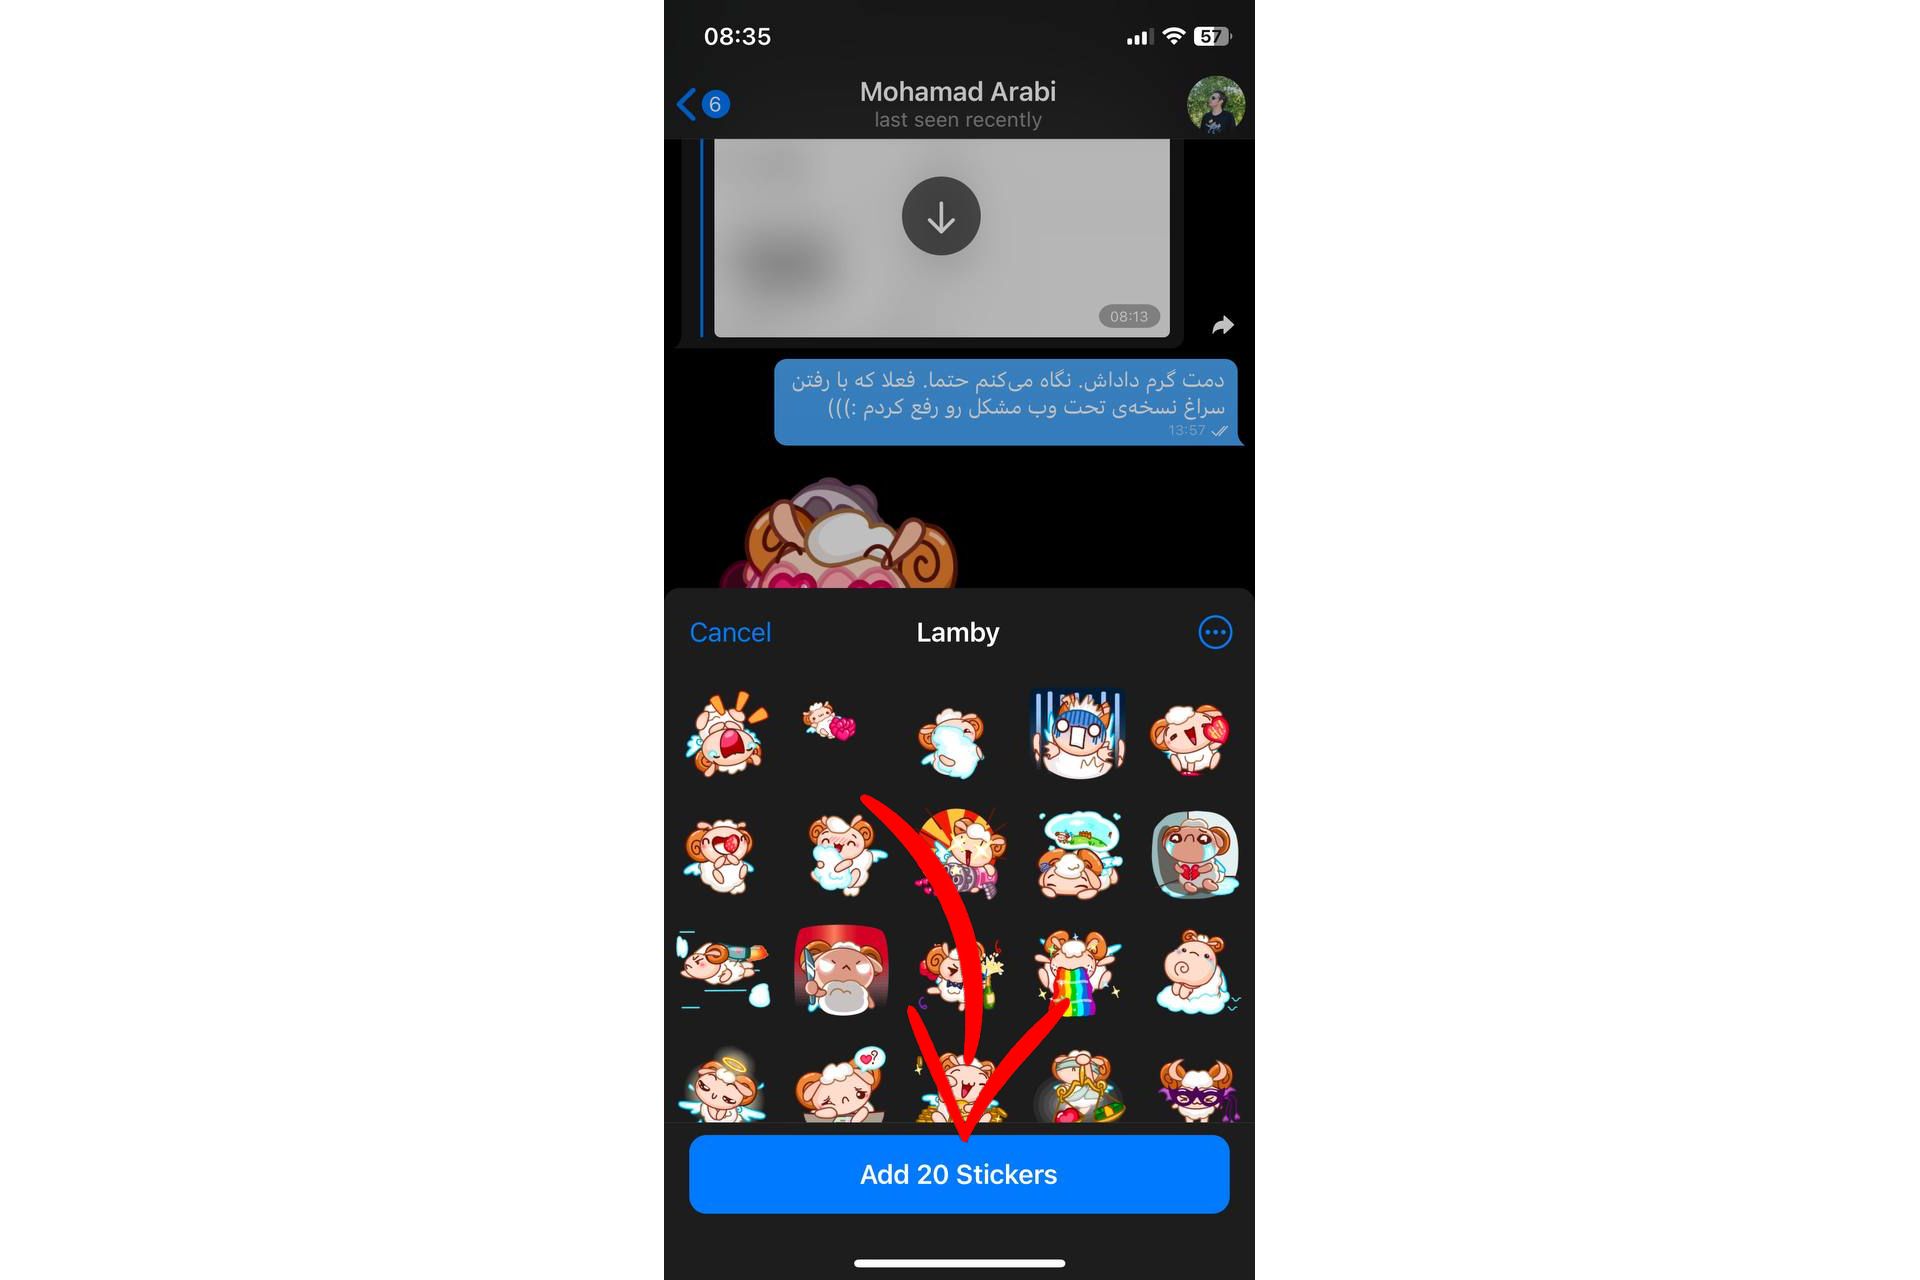 اضافه کردن استیکر جدید به تلگرام